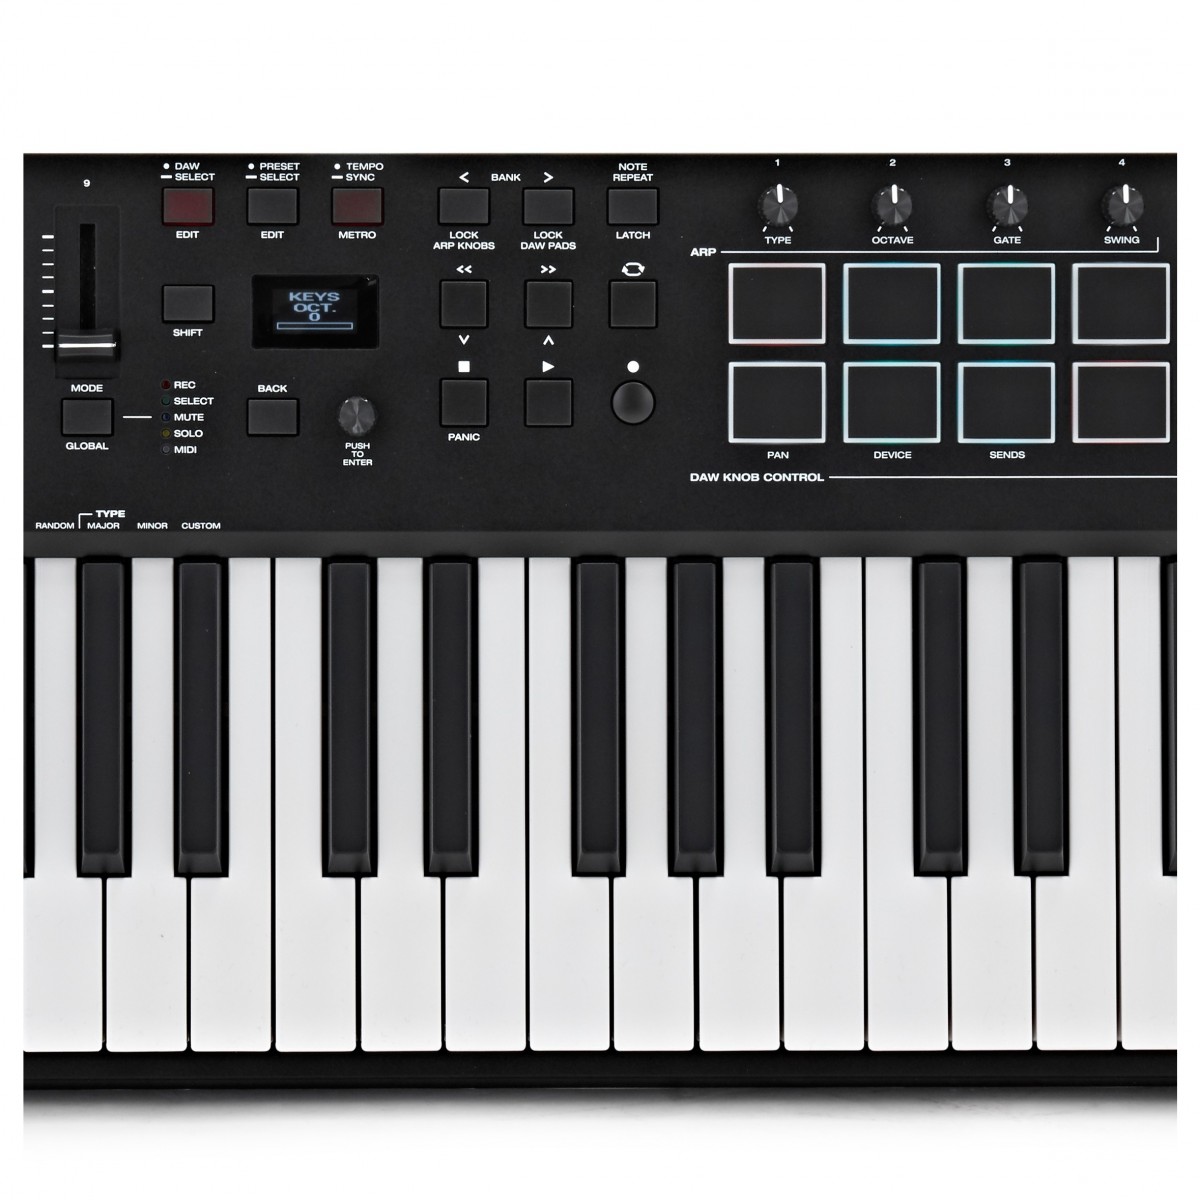 MIDI клавиатура M-Audio Oxygen Pro 61